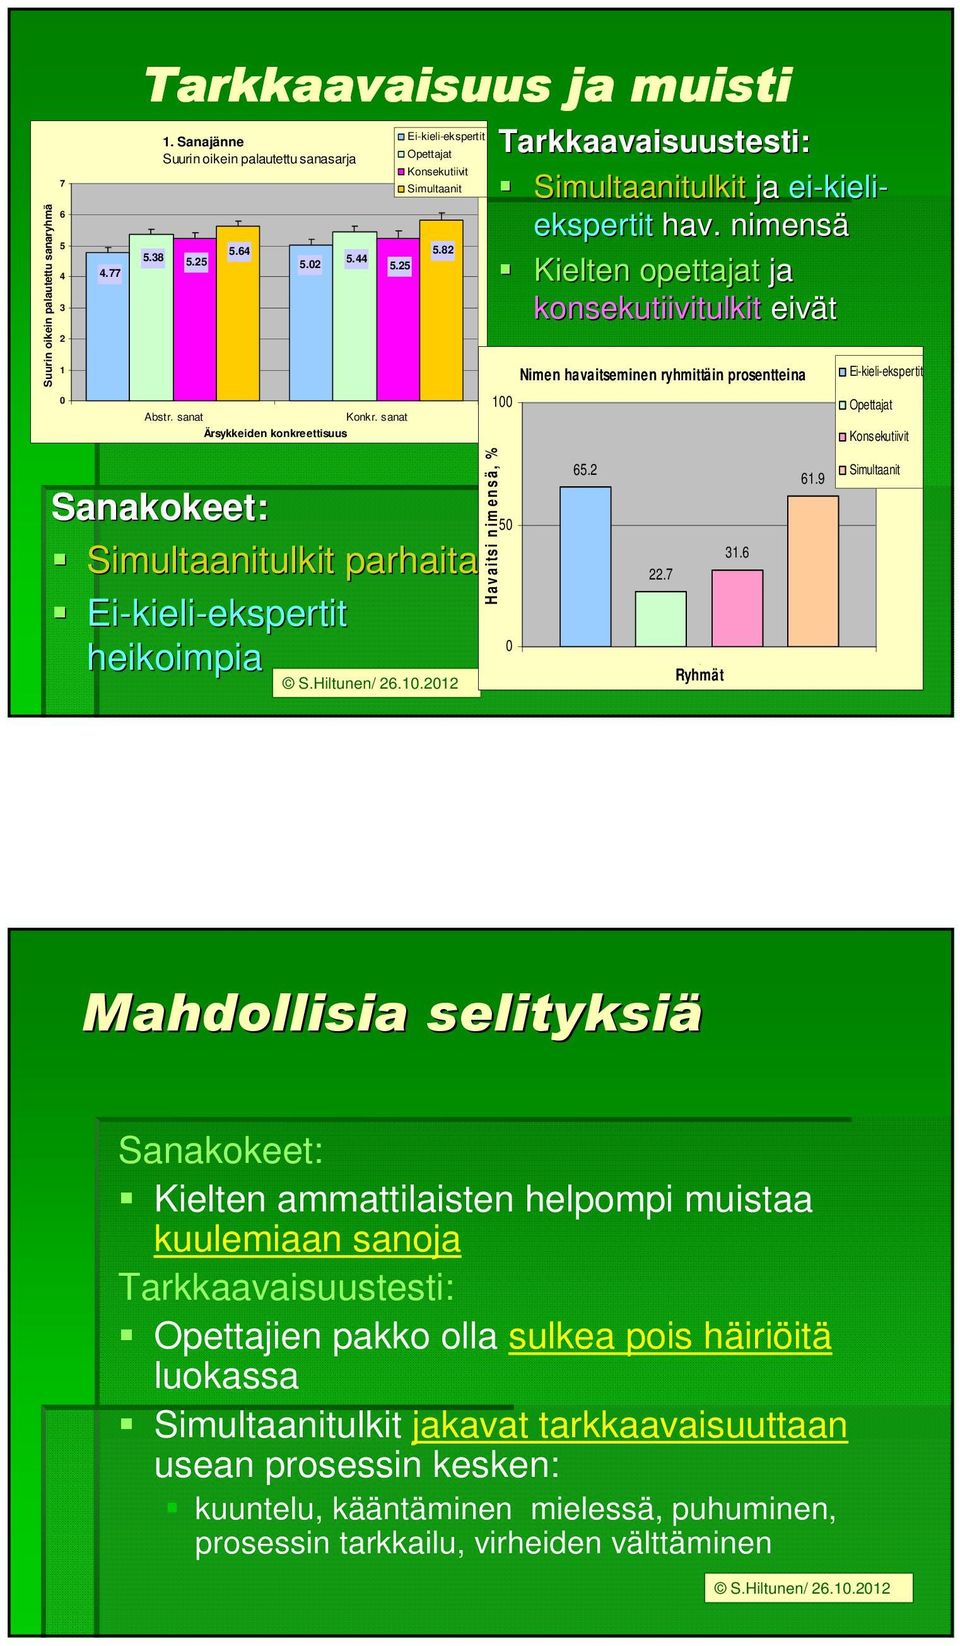 2012 Tarkkaavaisuustesti: Simultaanitulkit ja ei-kieli kieli- ekspertit hav.